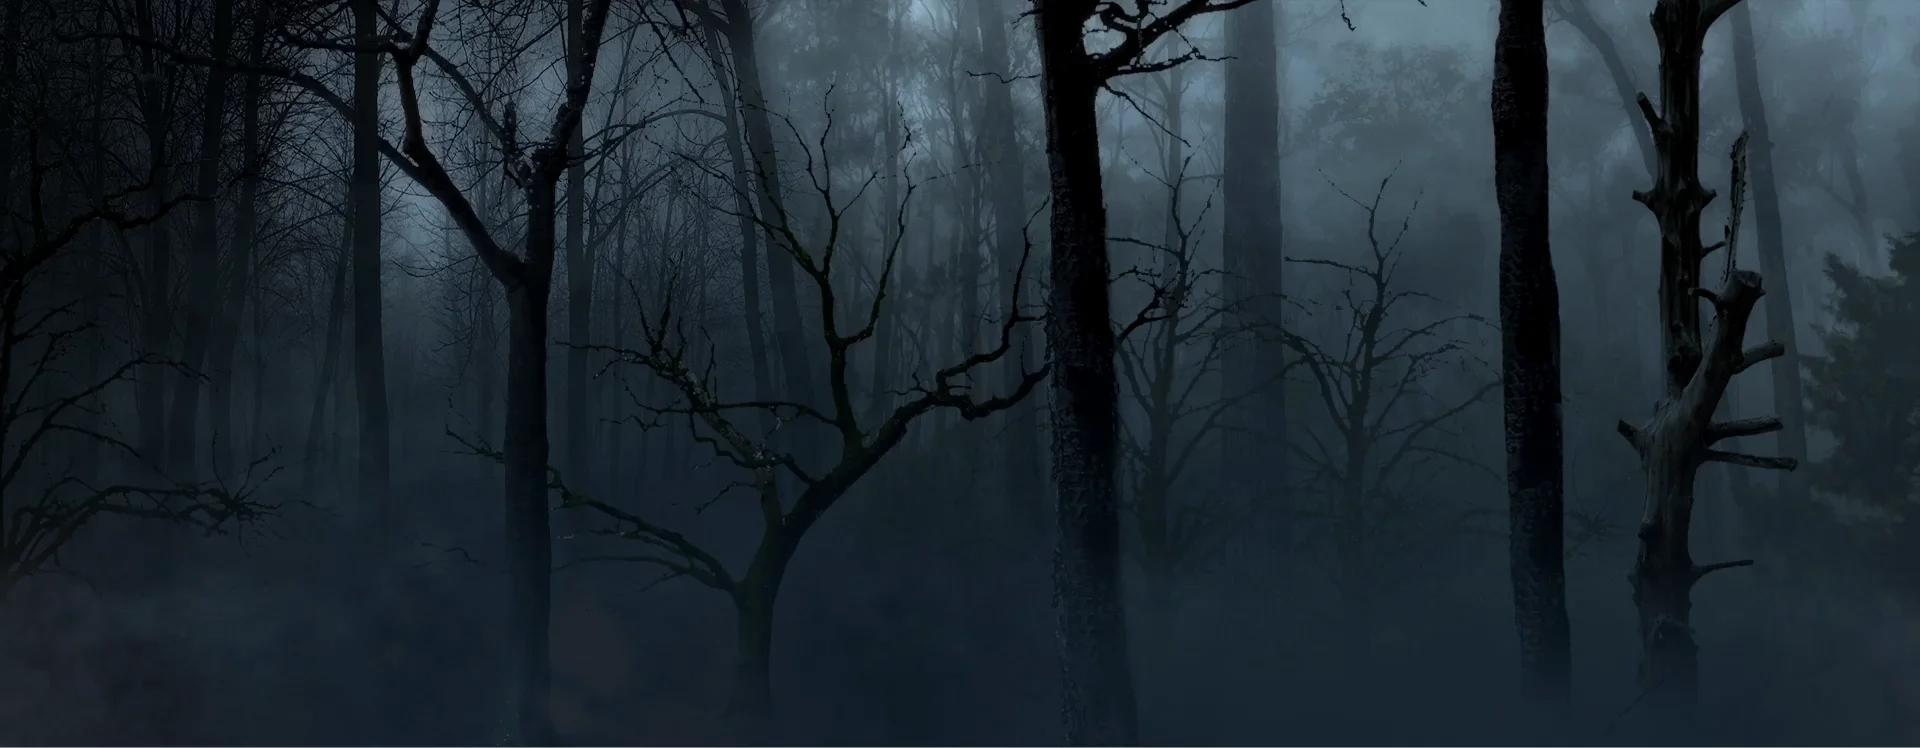 Тёмный лес Дрим кор. Dark Ambient Forest. Символы из клипа Ghost in the Fog. 2000 - Her Ghost in the Fog (Single).